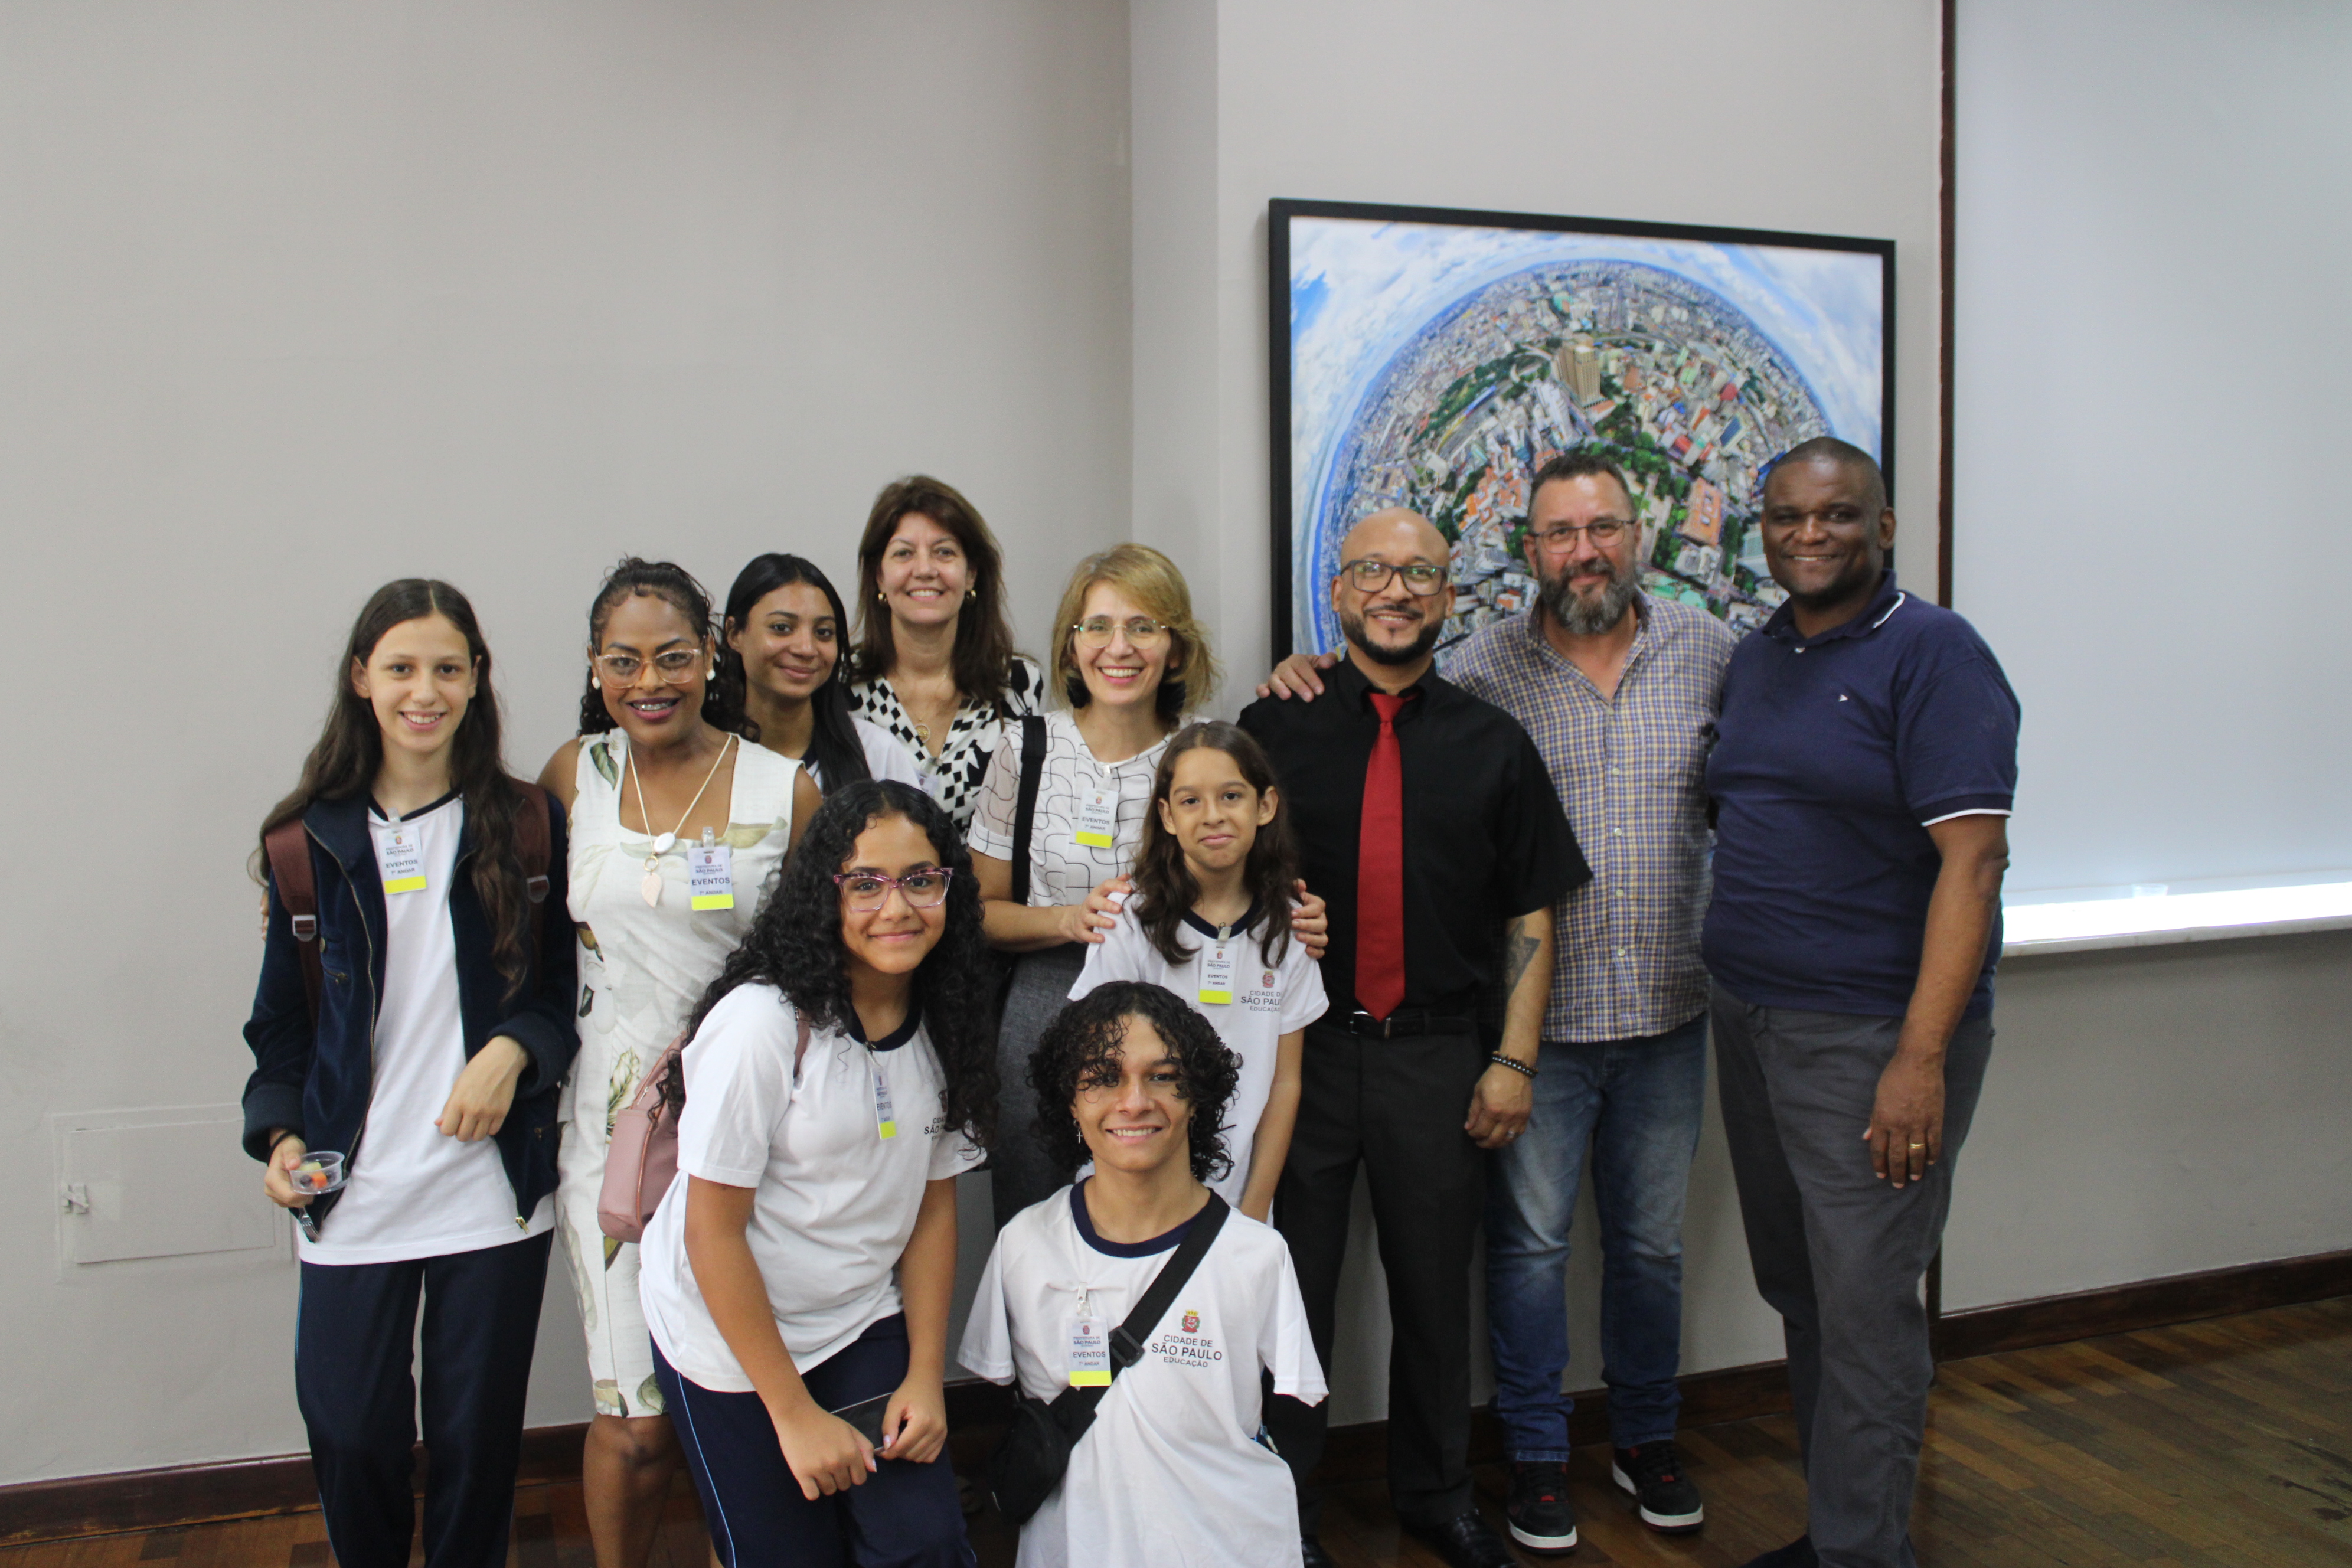 Na foto estão presentes cinco alunos da EMEF Dama Entre Rios Verdes, duas professoras, um professor e o diretor. Ao lado deles está o chefe de gabinete da Subprefeitura. Todos estão sorrindo.